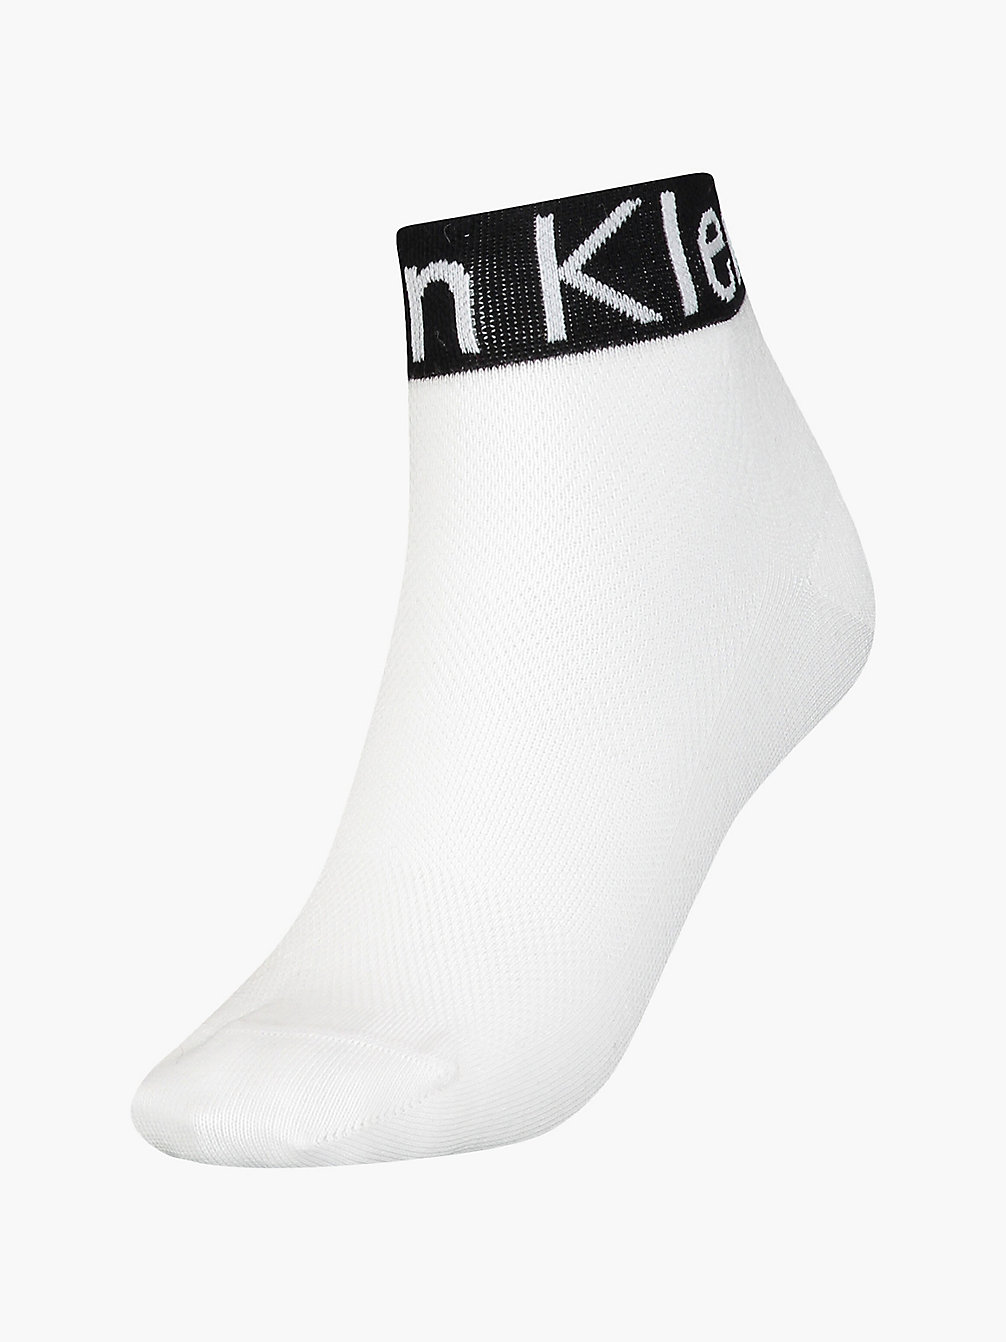 WHITE > Knöchelsocken Mit Logo > undefined Damen - Calvin Klein